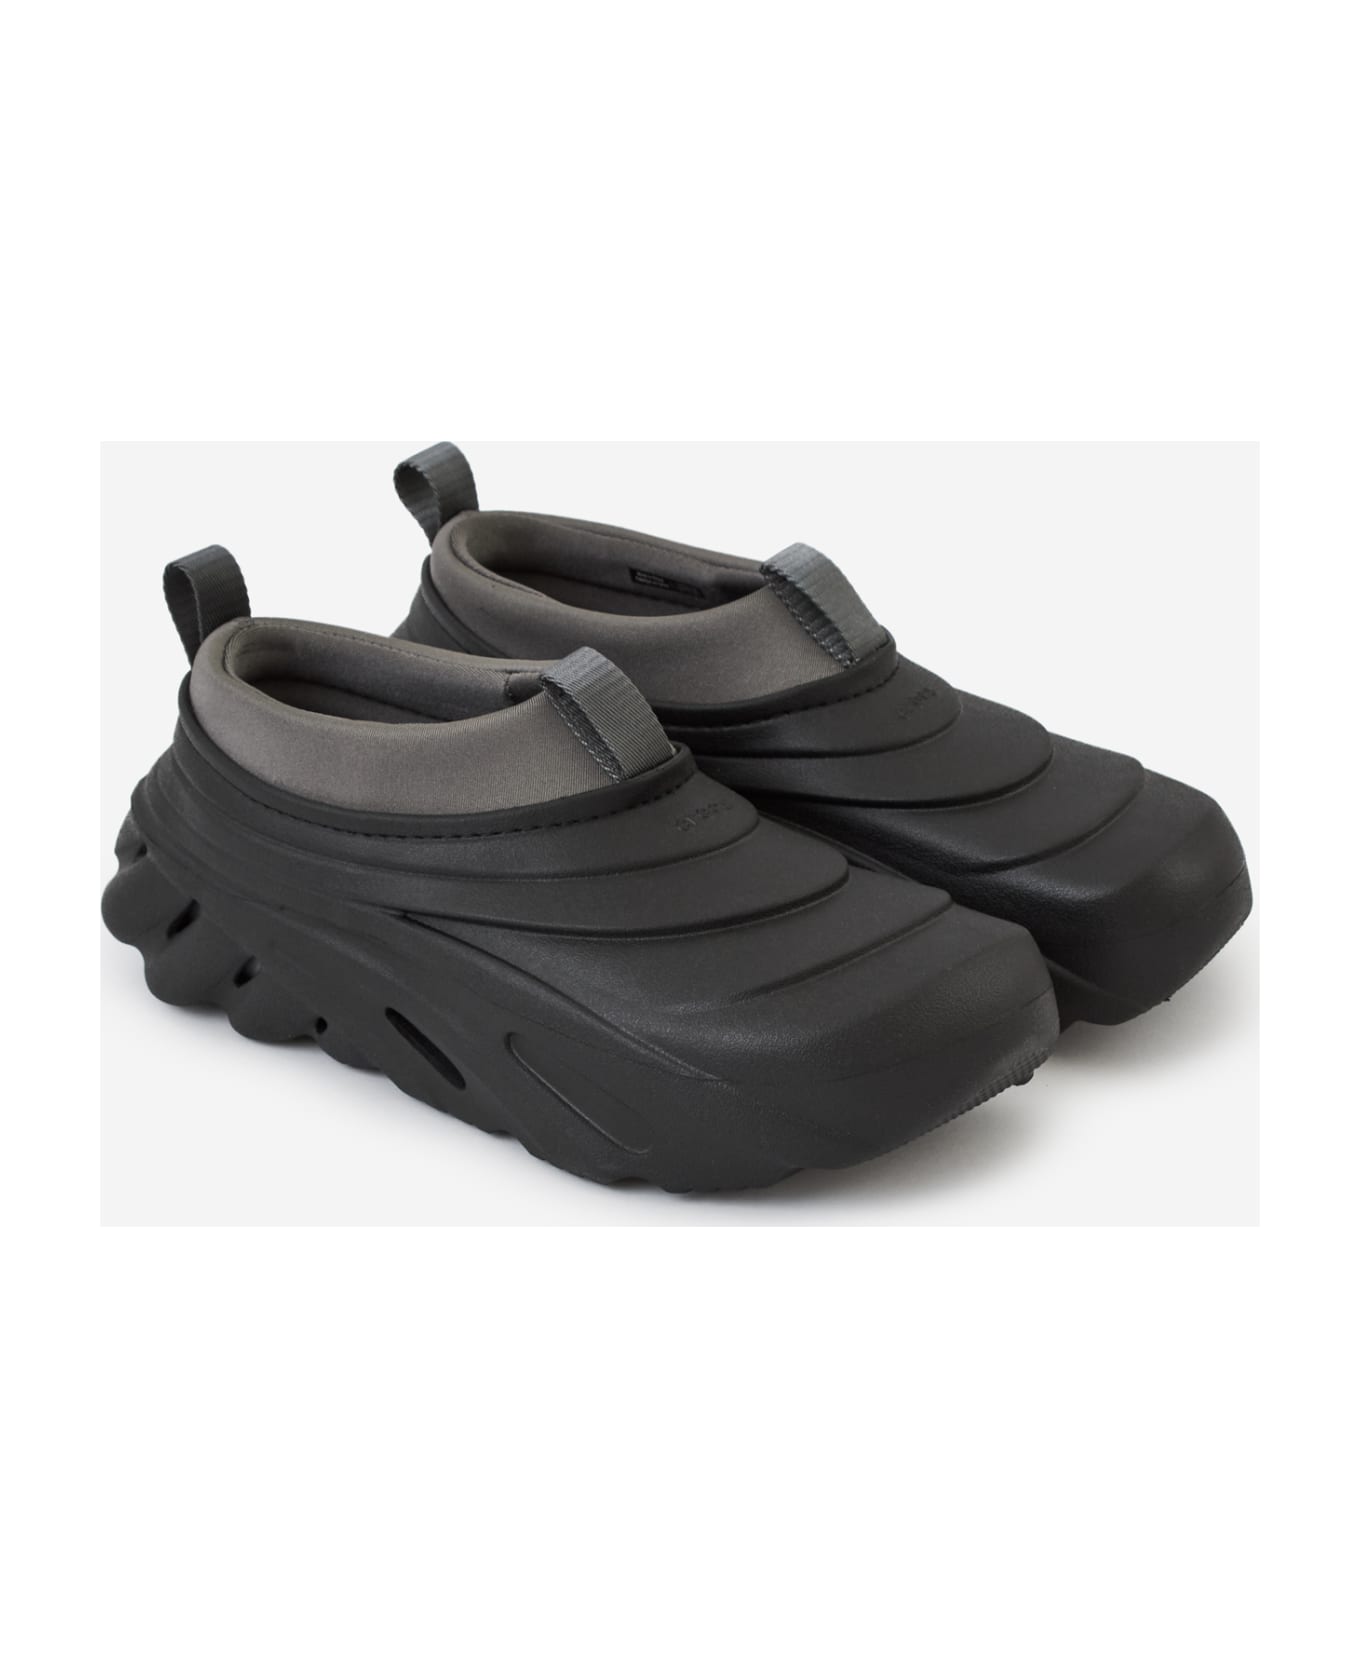 Crocs Echo Storm Shoes - black